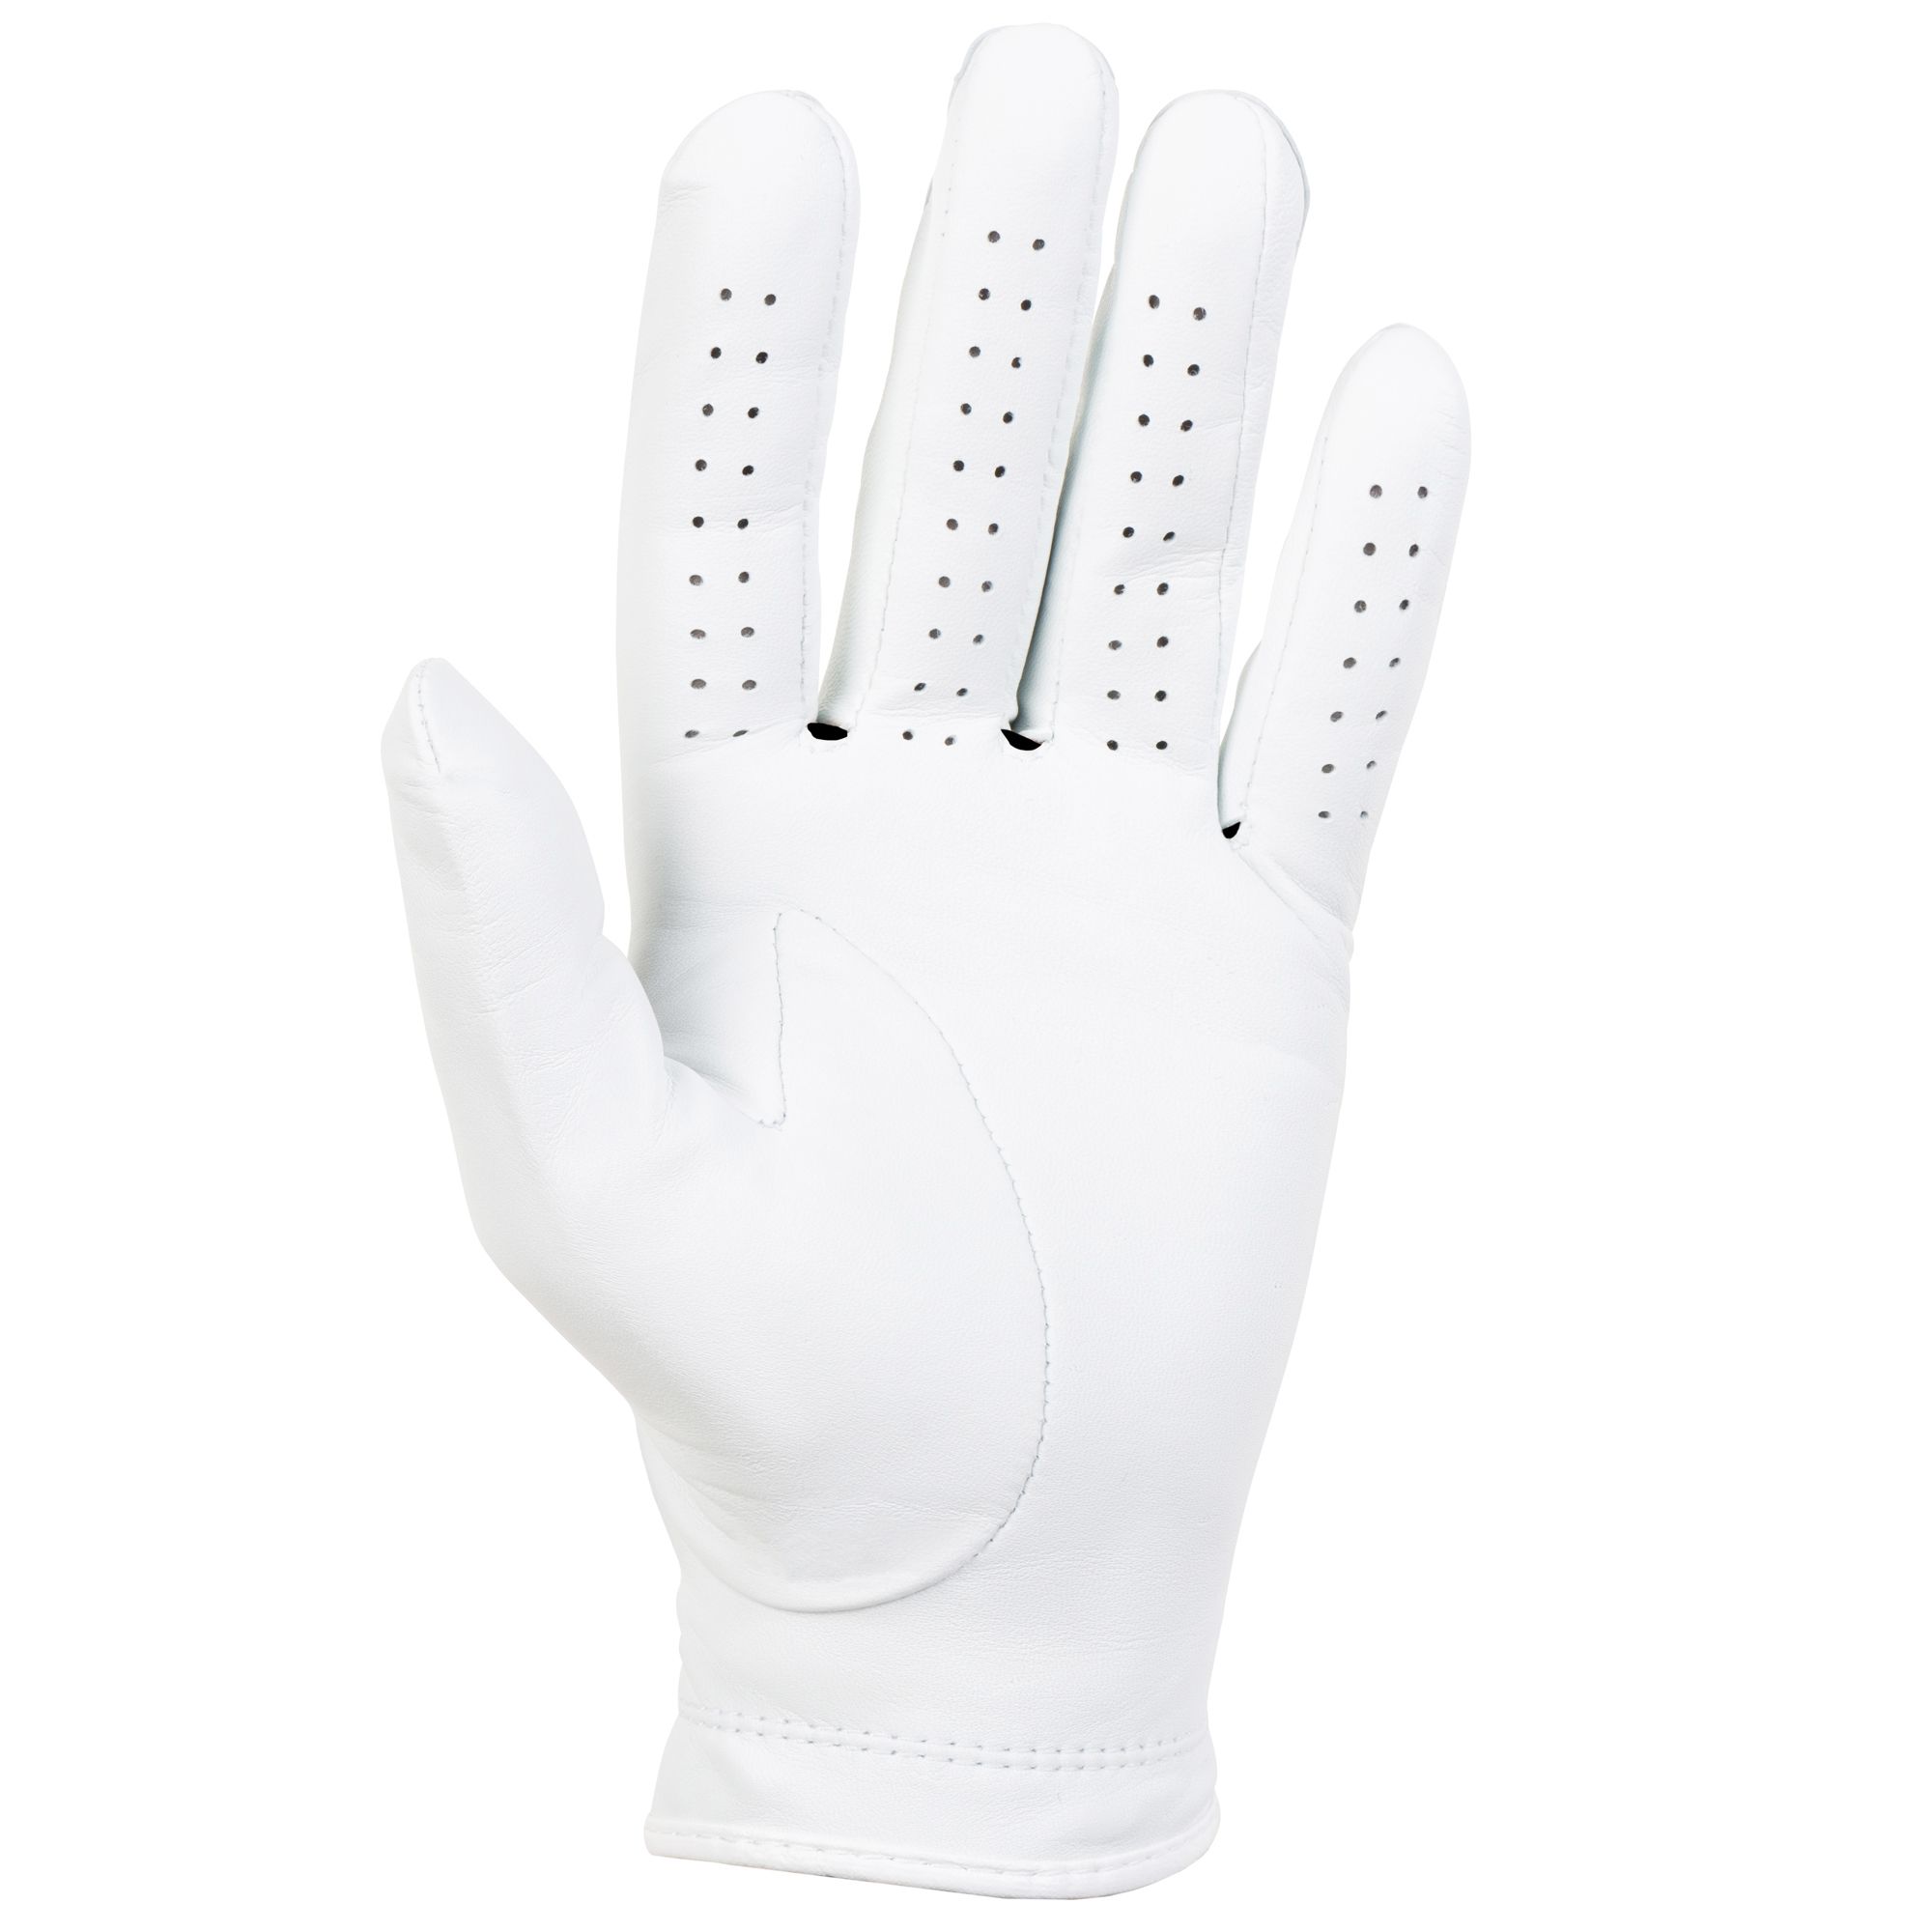 Titleist Perma Soft Golf Gloves